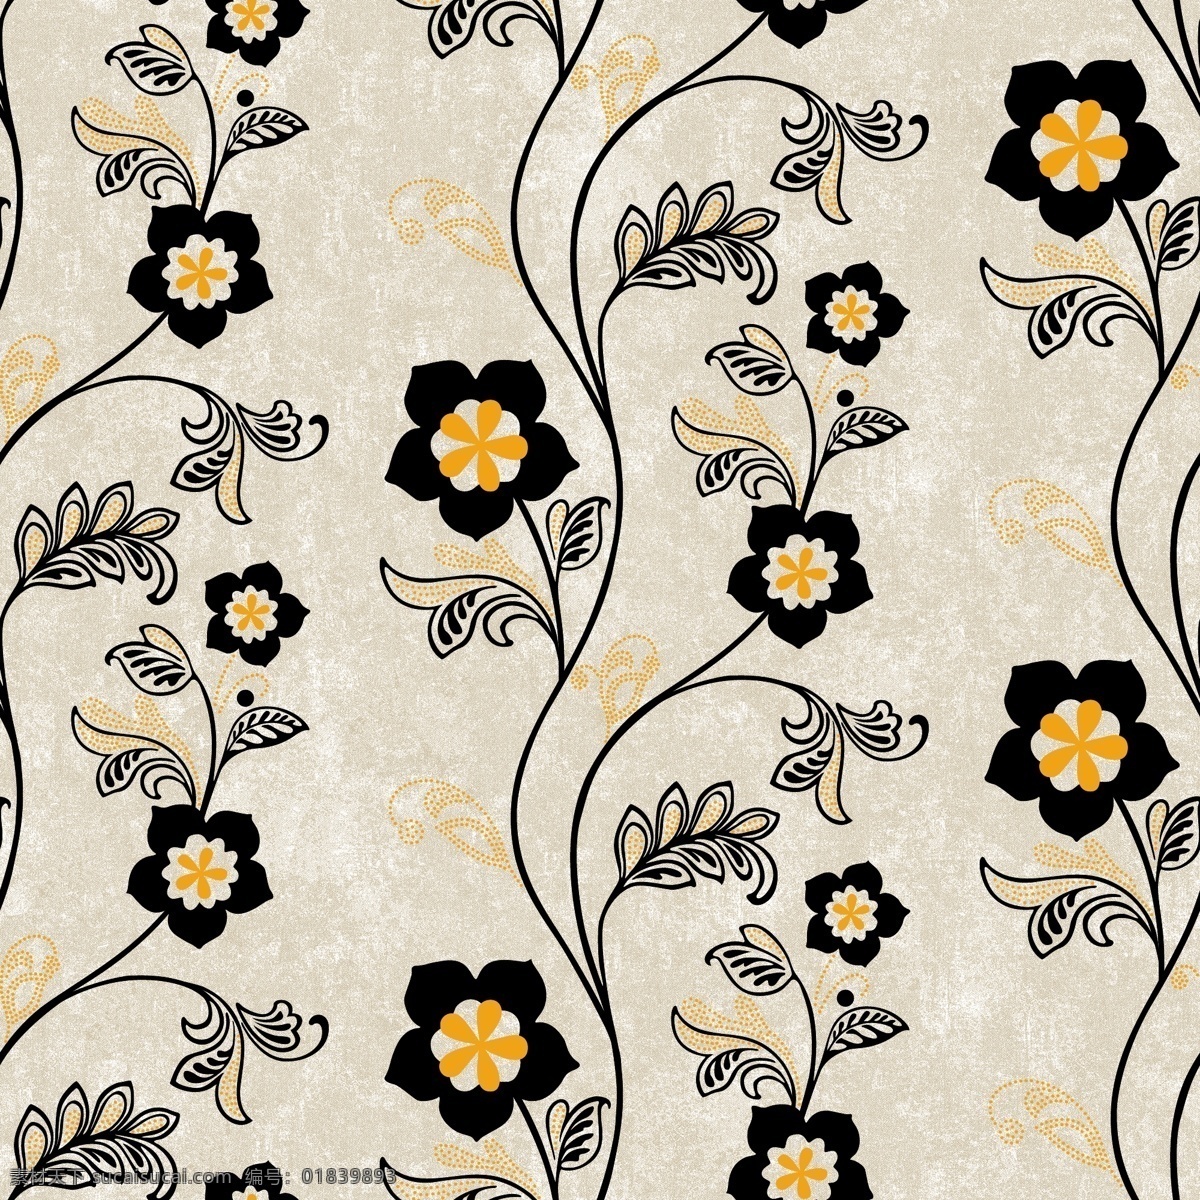 黄 黑 镂空 小花 壁纸 图案 欧式纹理 ai矢量 简约大气 装饰壁纸 装饰设计 壁纸图案 装饰装具备